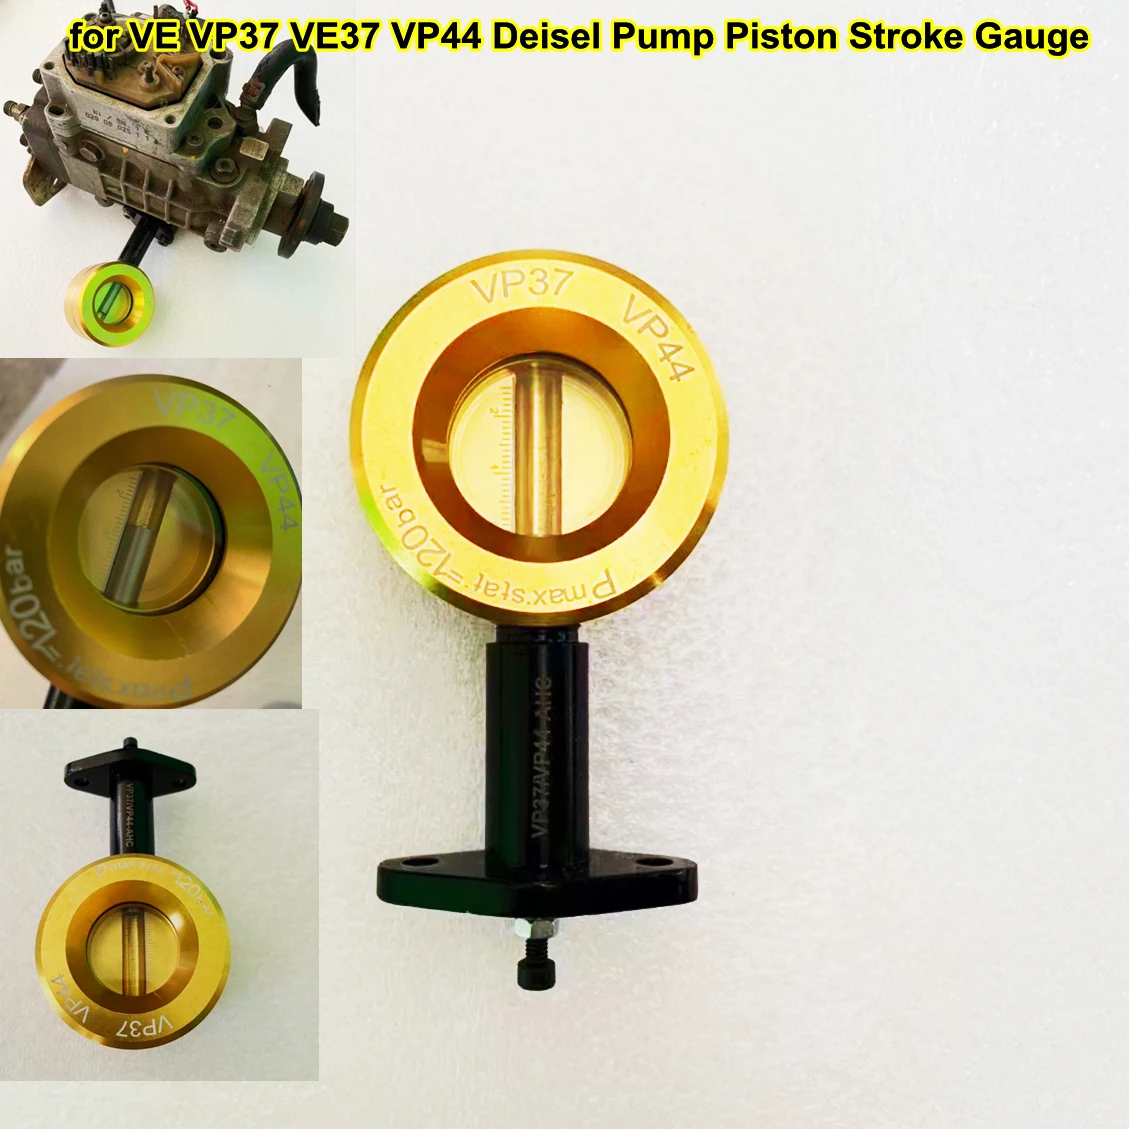 

VE VP37 VE37 VP44 Diesel Pump Piston Stroke AHC Tester Gauge Fuel Rotor Pump Travel Meausring Repair Tool